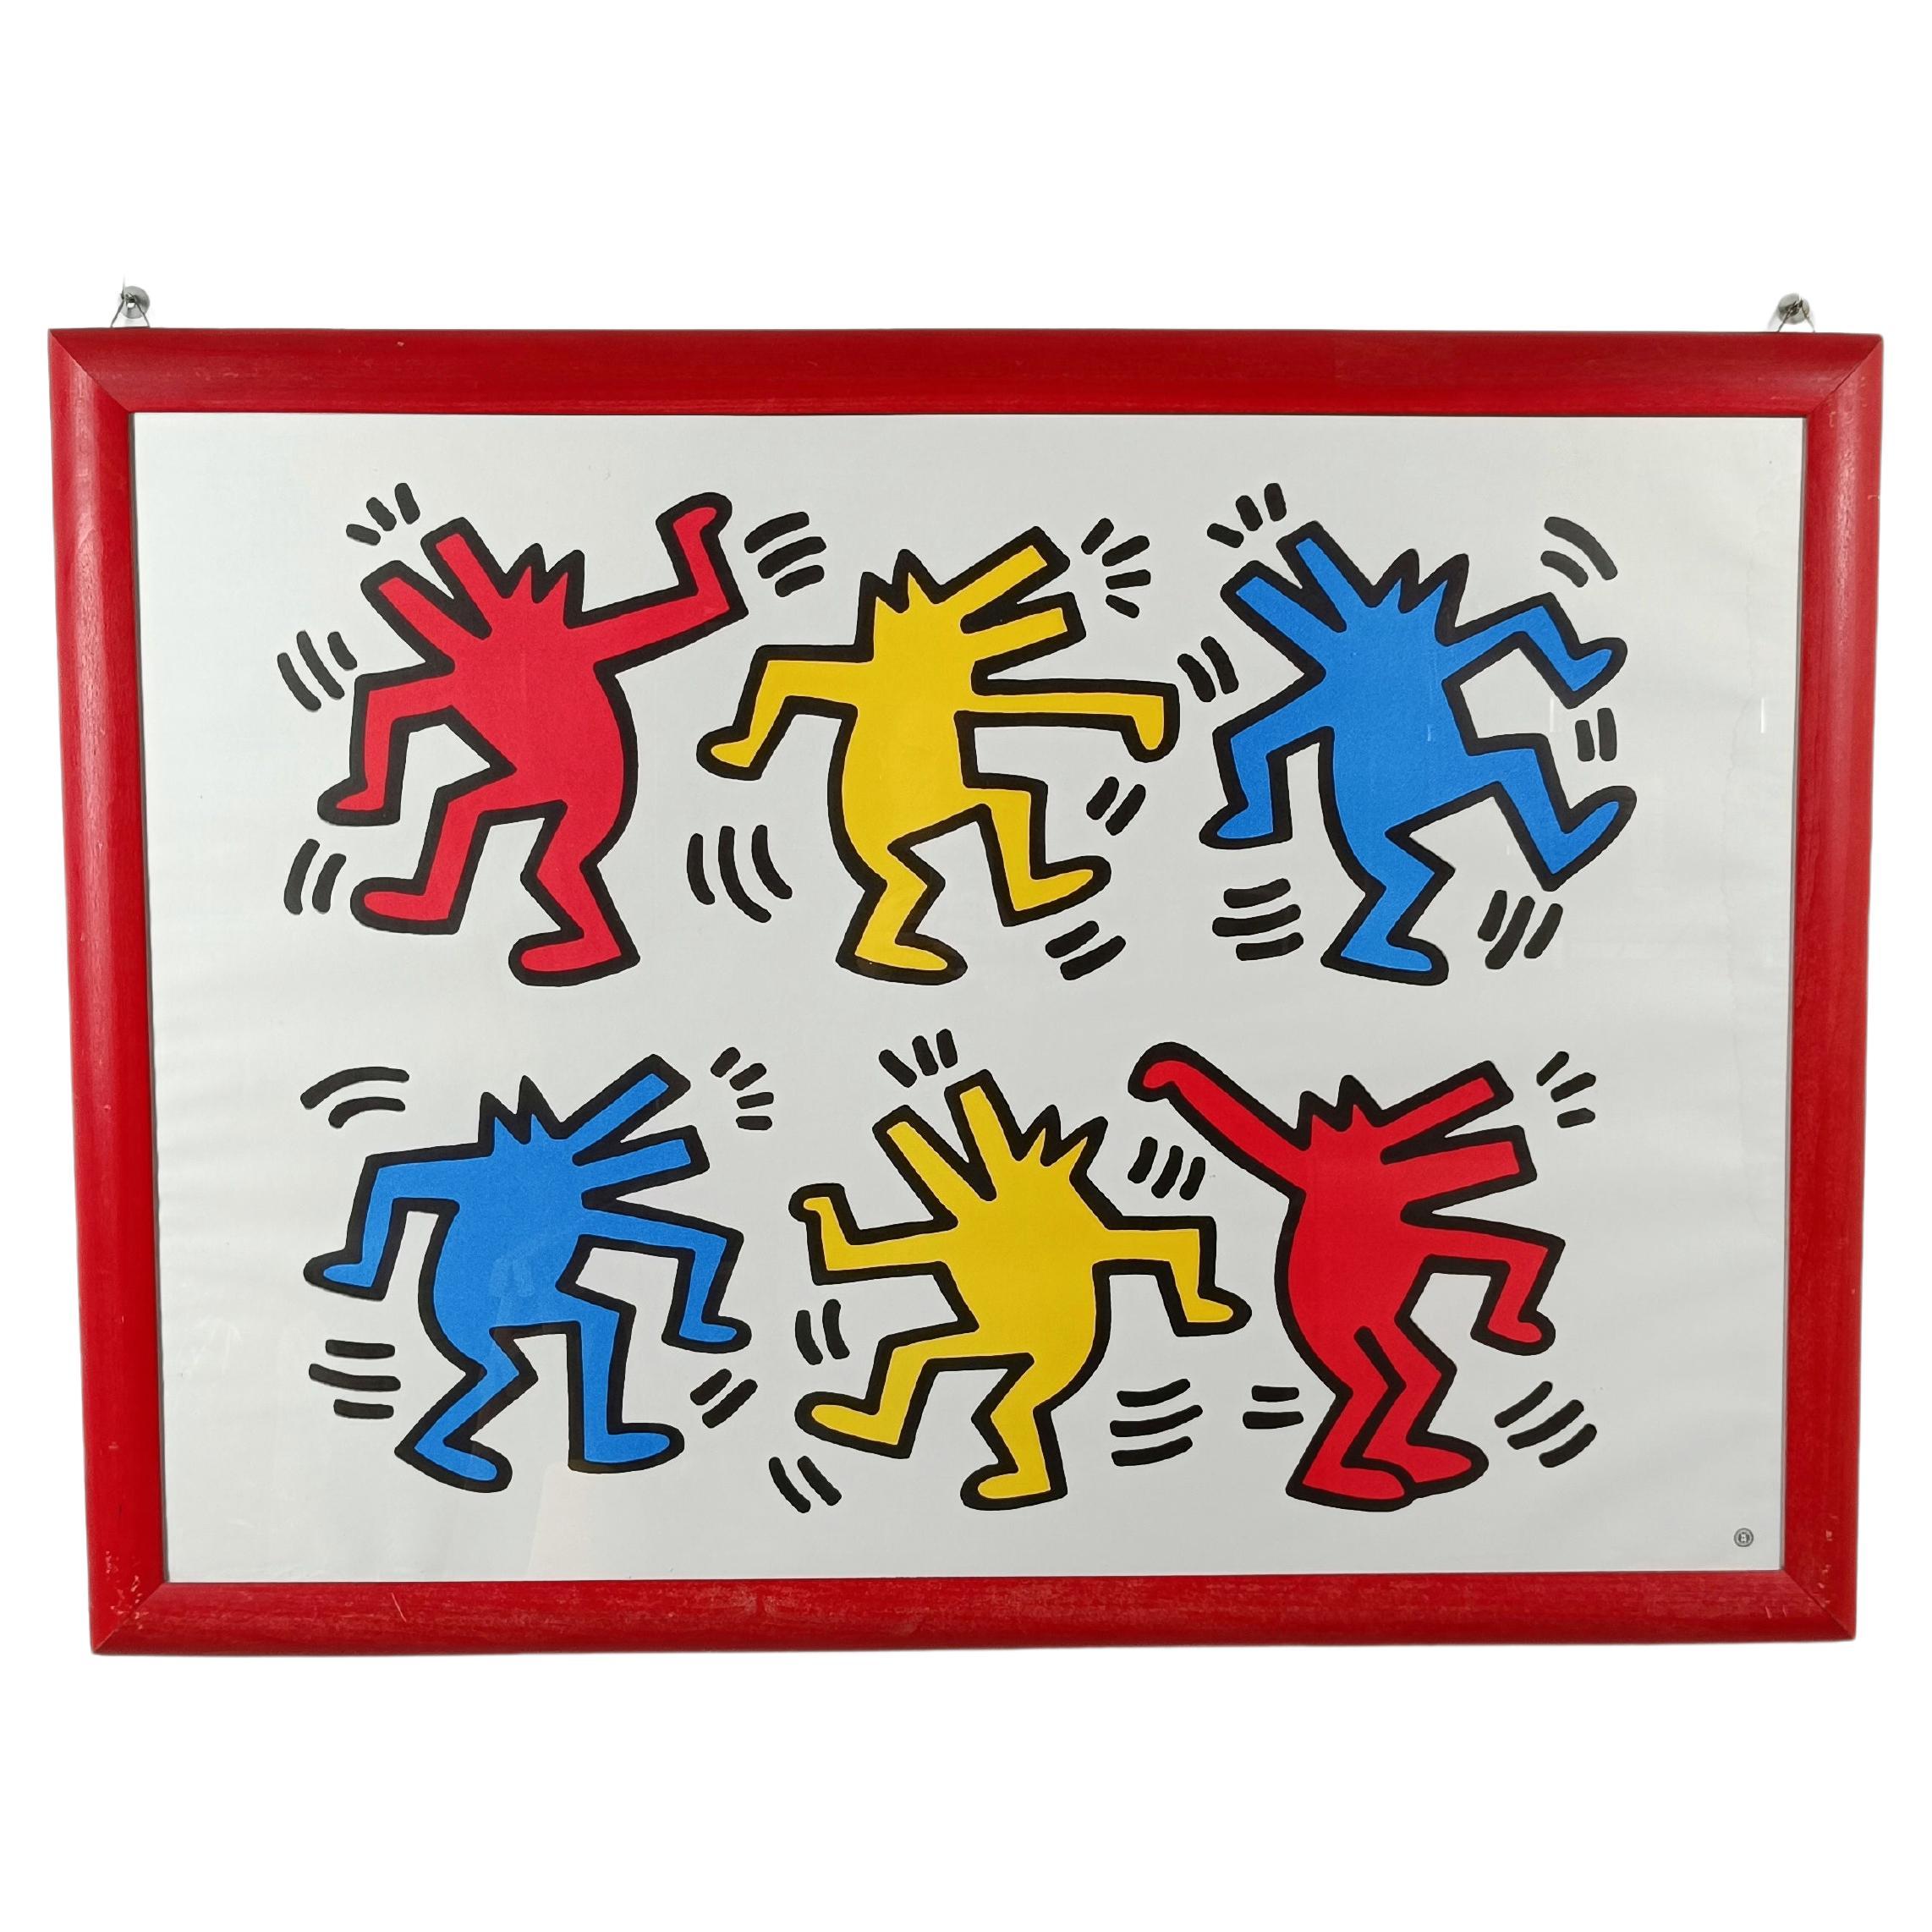 Affiche de Keith Haring représentant des chiens dansant imprimée en France par Nouvelles Imeges S.A.  en vente